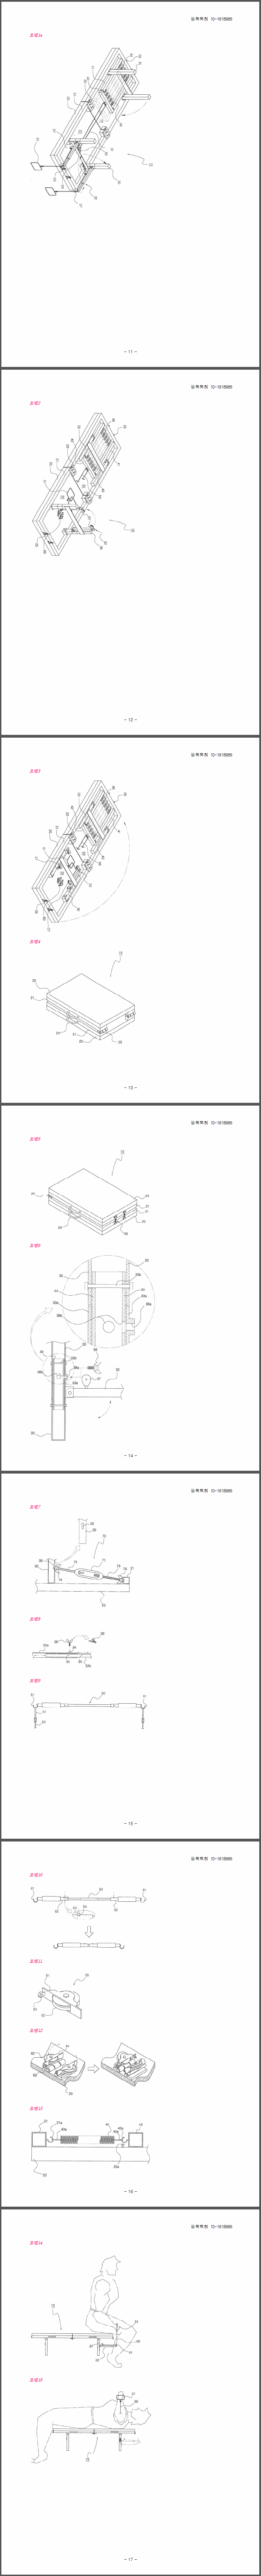 특허 제10-1618986호(탄성체를 이용한 휴대형 벤치프레스, 신우섭)